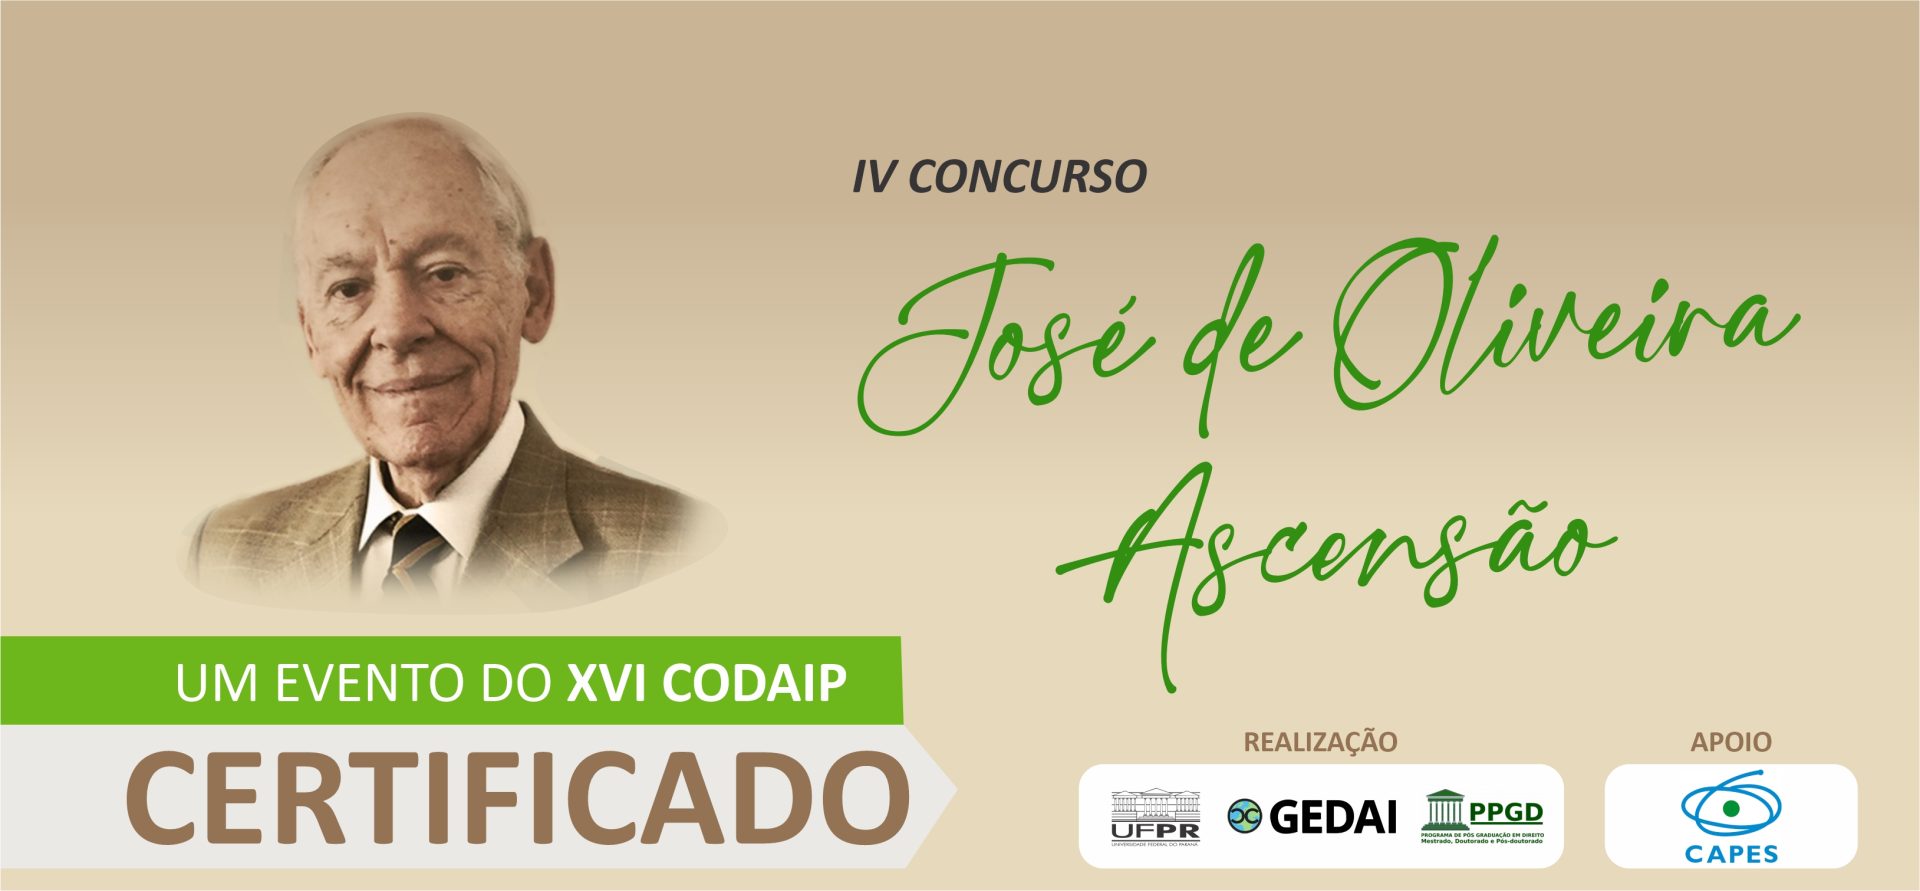 IV CONCURSO Prof. Dr. José de Oliveira Ascensão – CERTIFICADOS